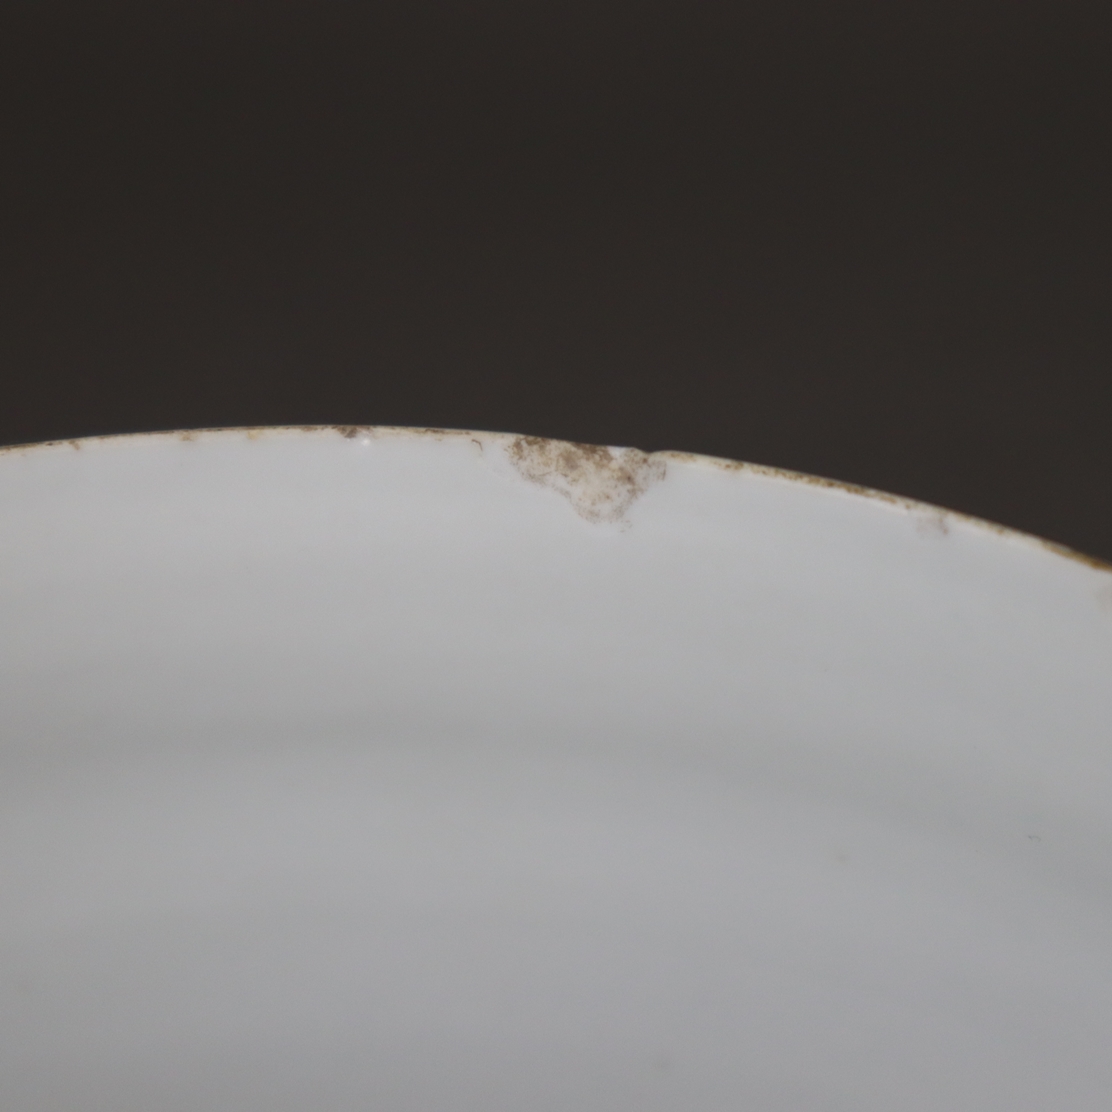 Deckeldose - China, Porzellan, runde zylindrische Form, Schauseite und Stülpdec - Image 12 of 14